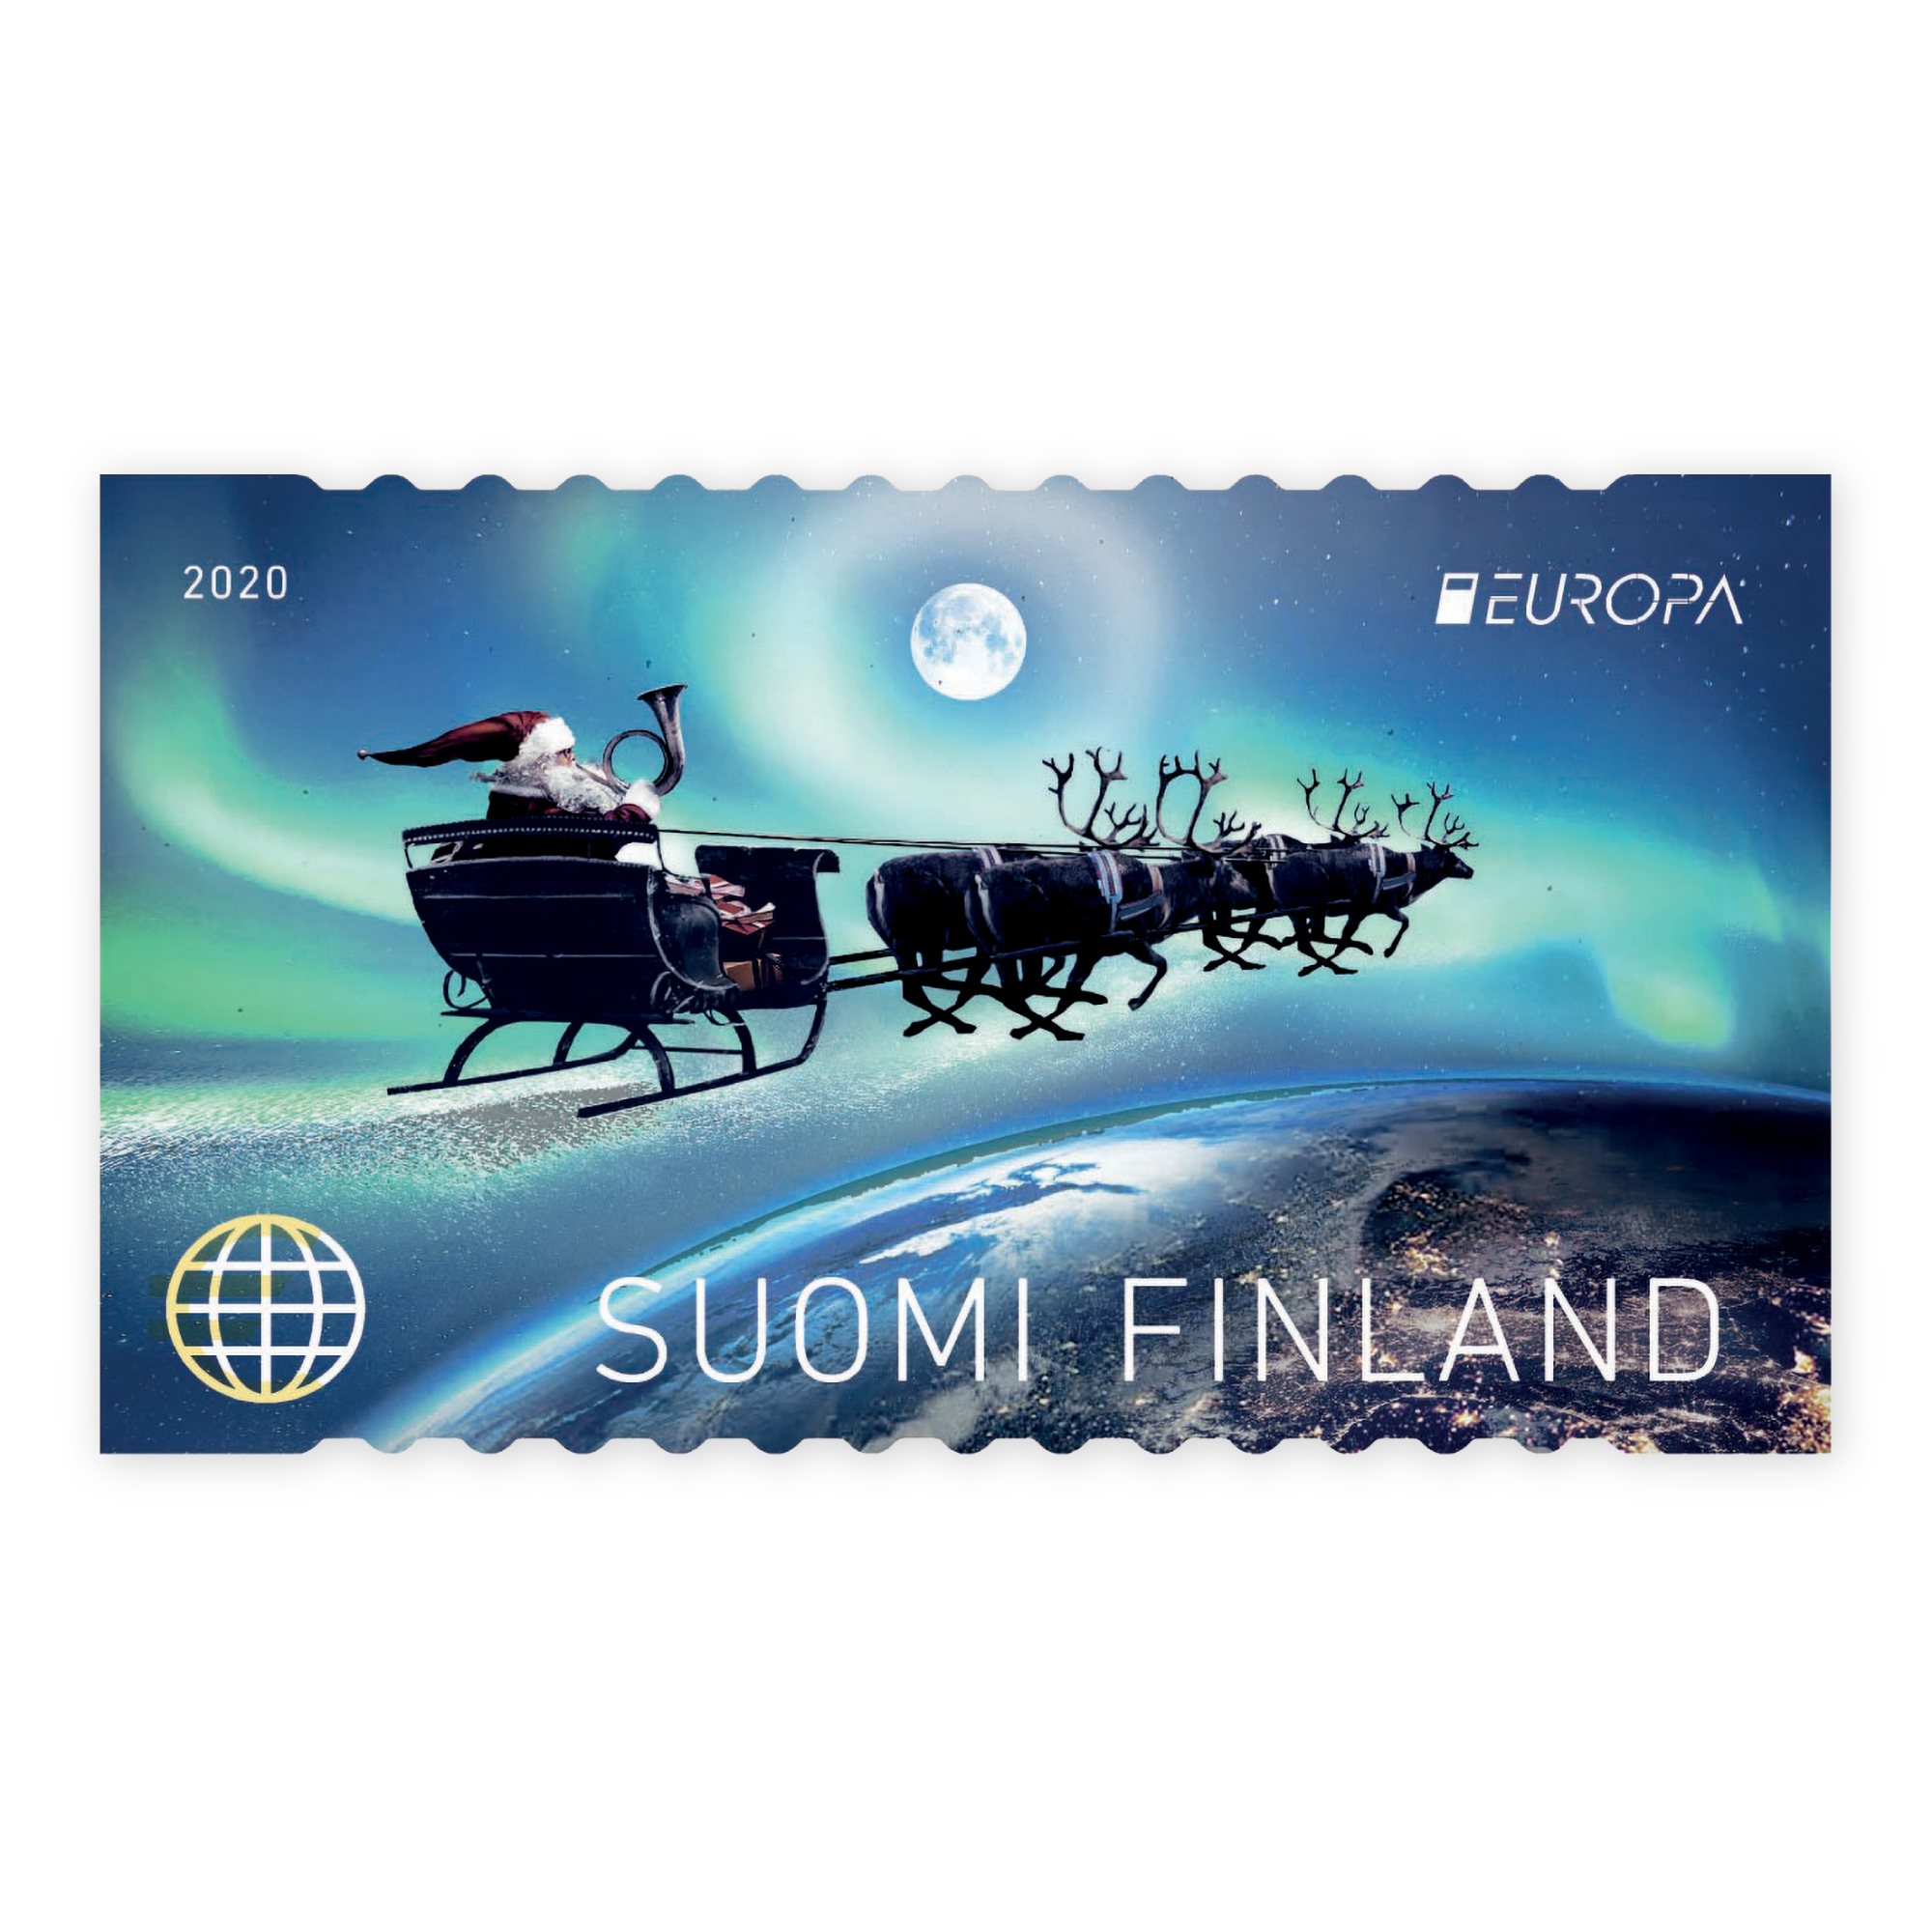 Europa: postal routes